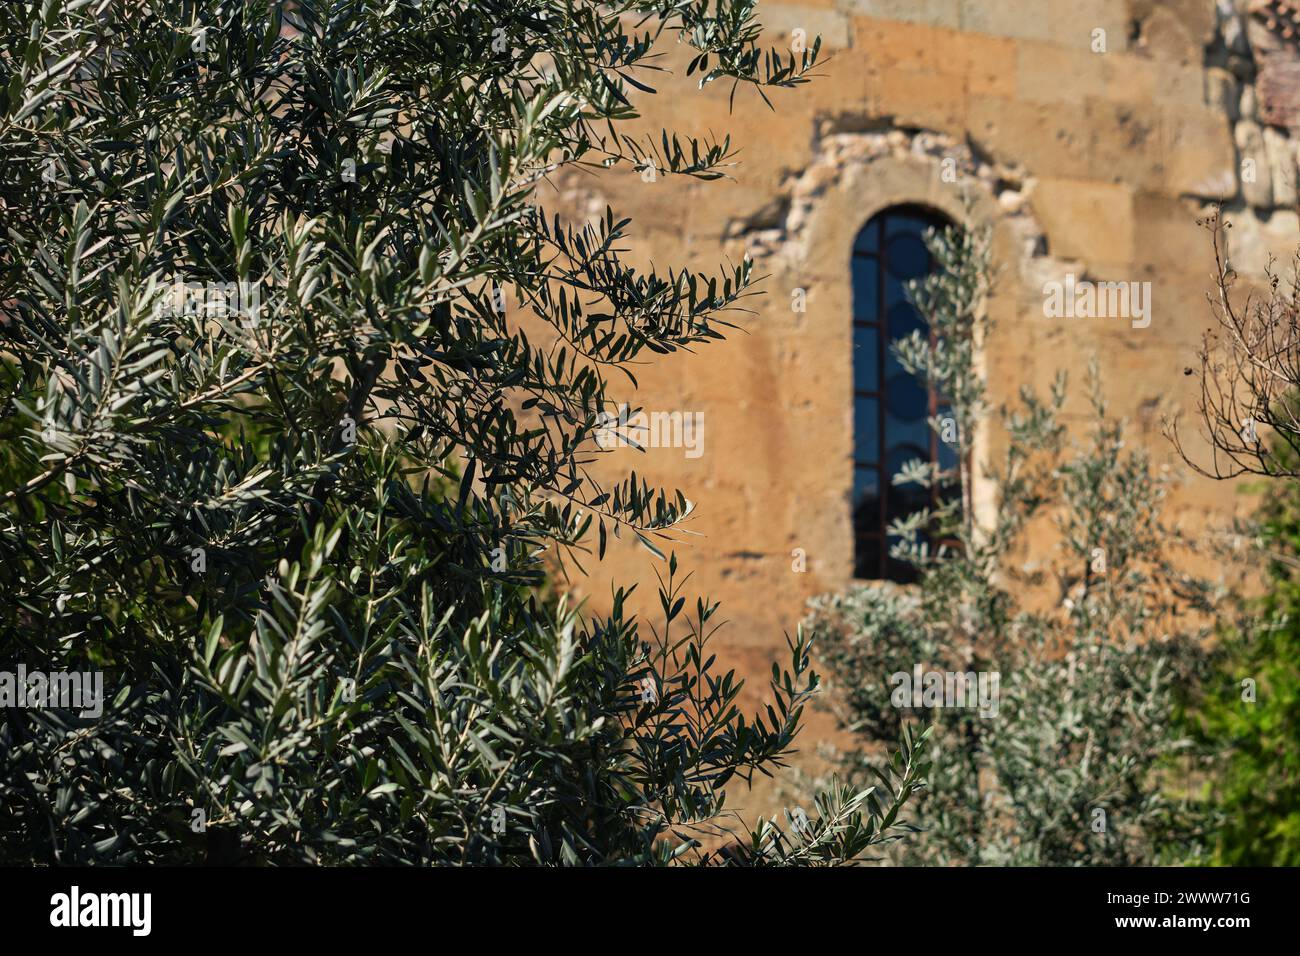 Junge Olivenbäume vor dem Hintergrund eines alten Tempels, selektiver Fokus auf Baumzweige, Idee für eine Postkarte Stockfoto